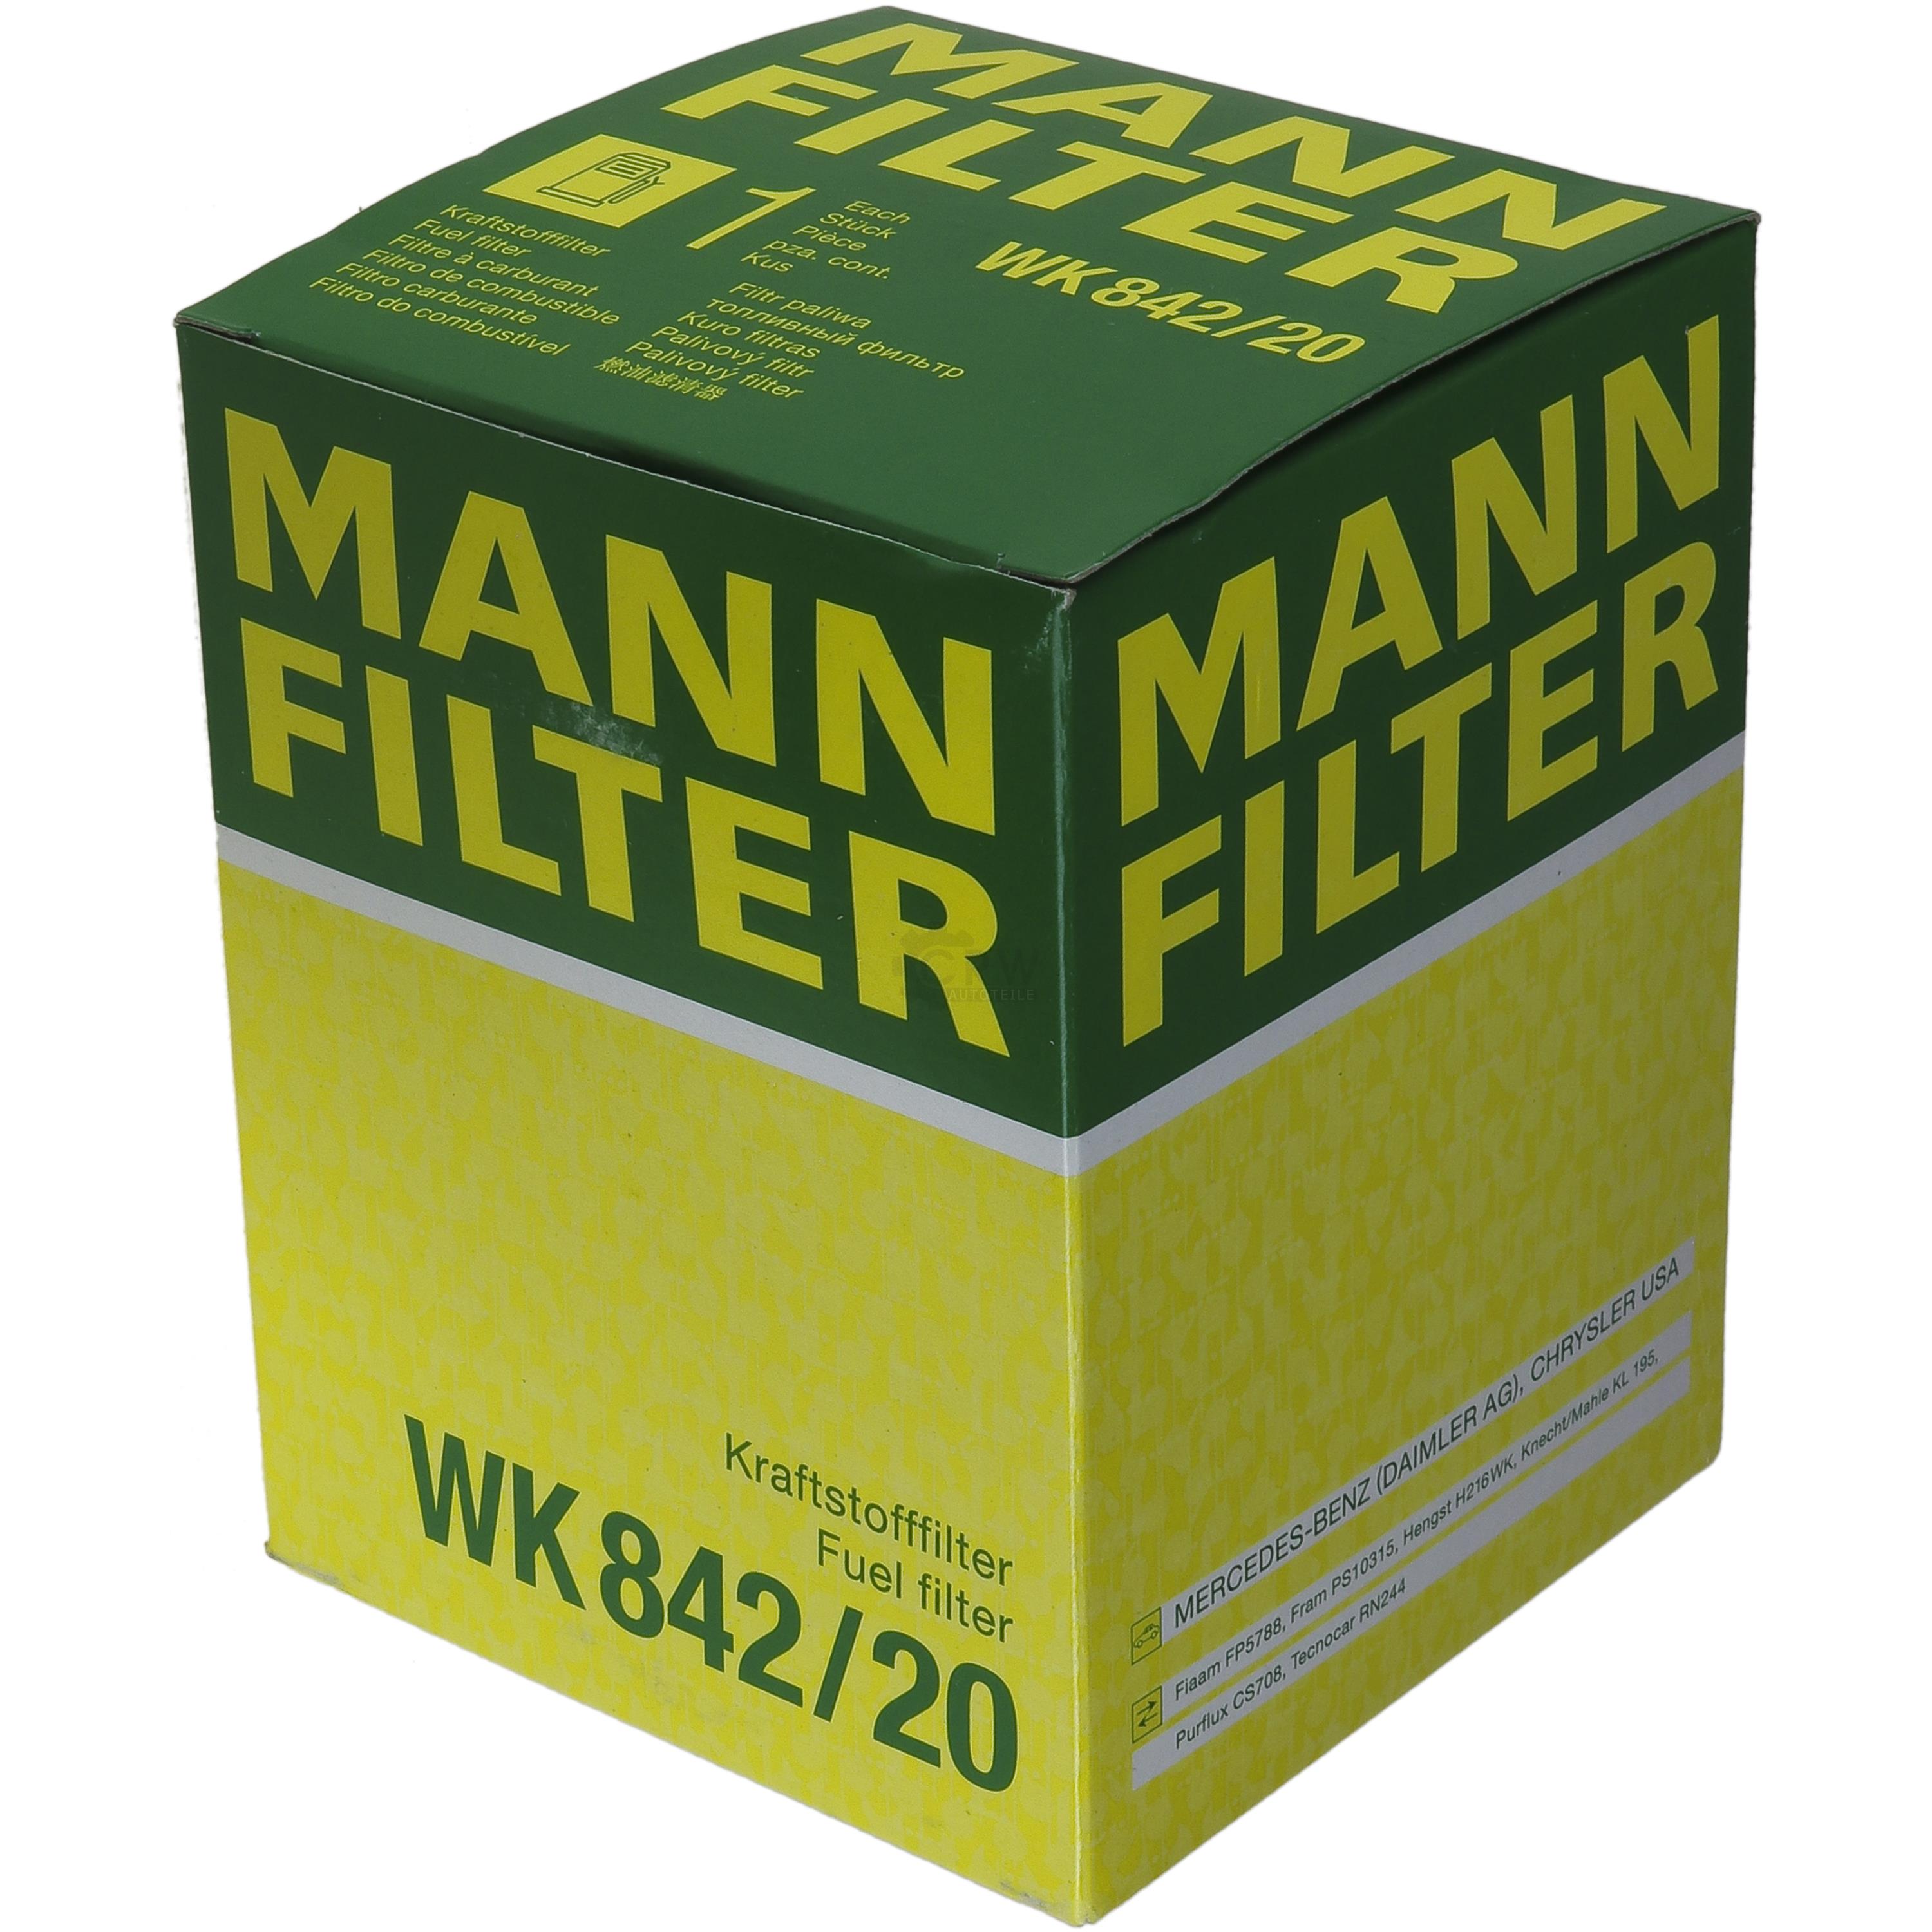 MANN-FILTER Kraftstofffilter WK 842/20 Fuel Filter